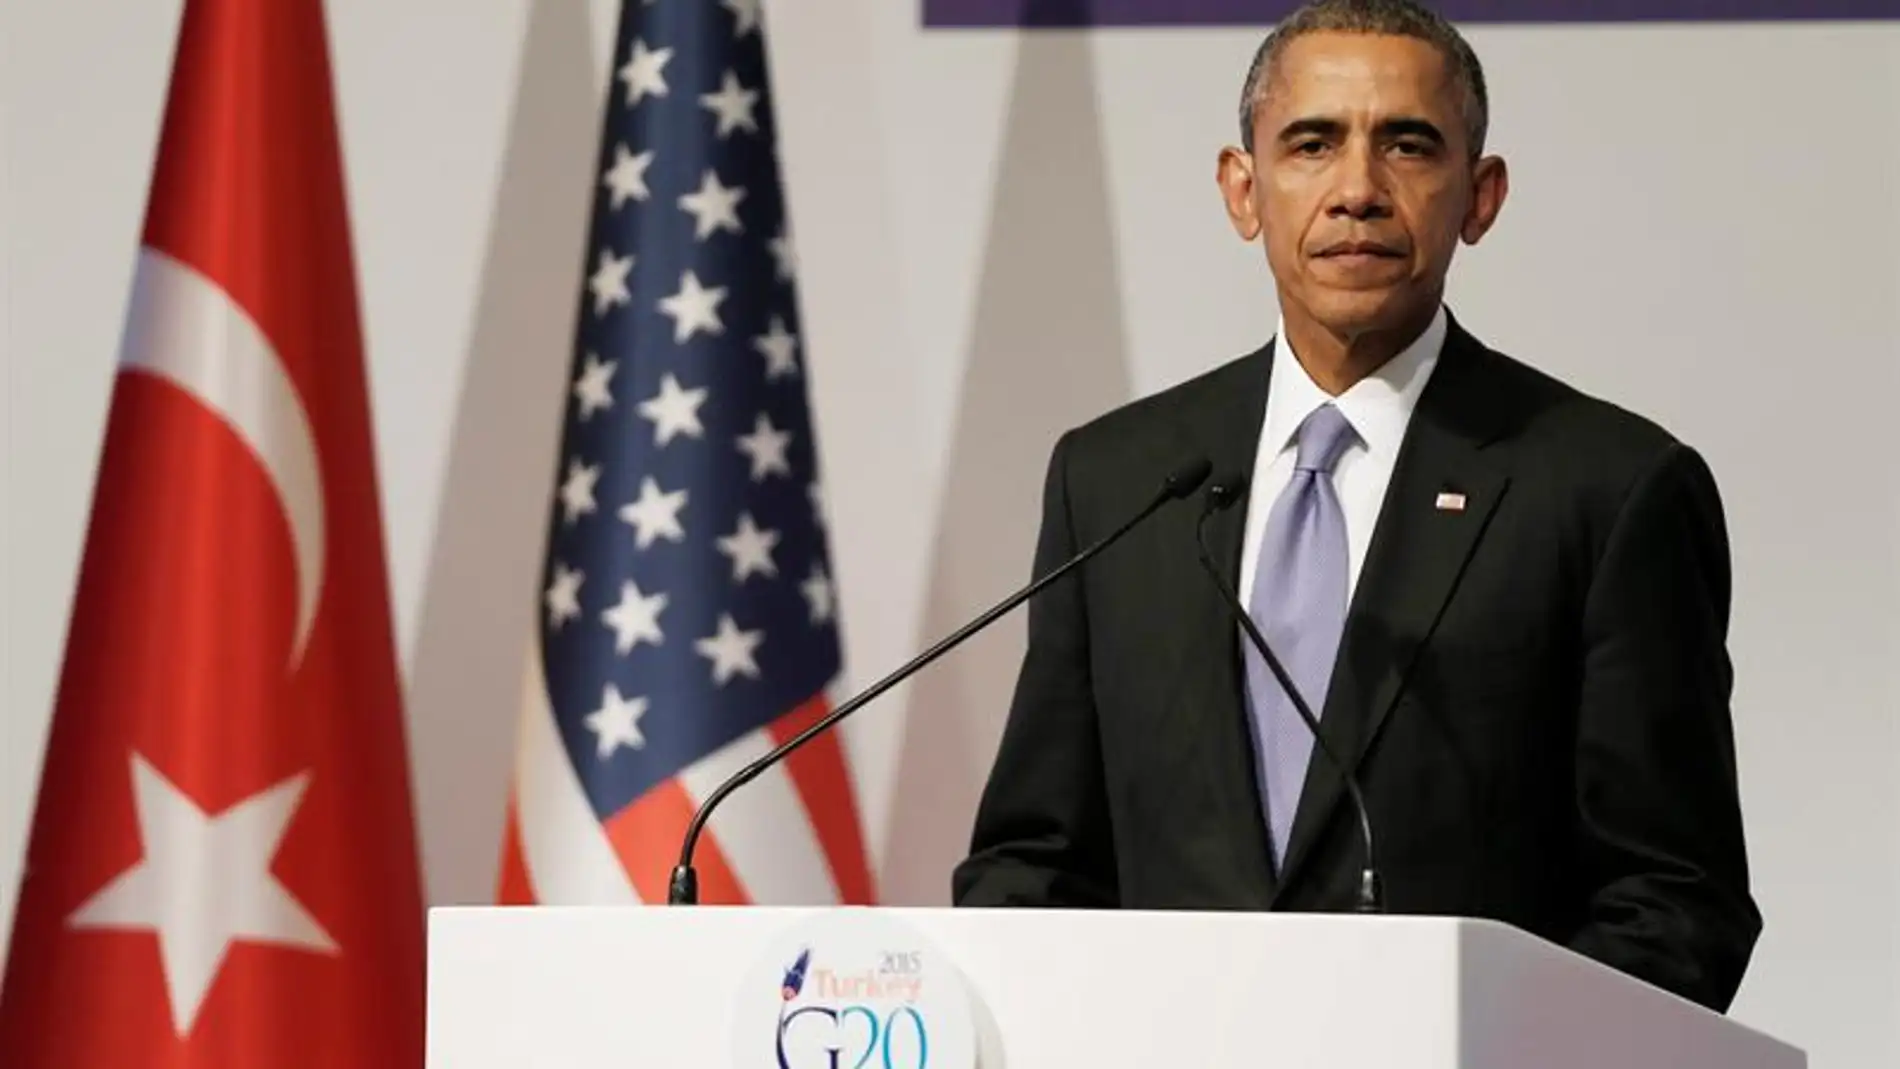 Barack Obama, durante la rueda de prensa posterior al G-20 en Turquía